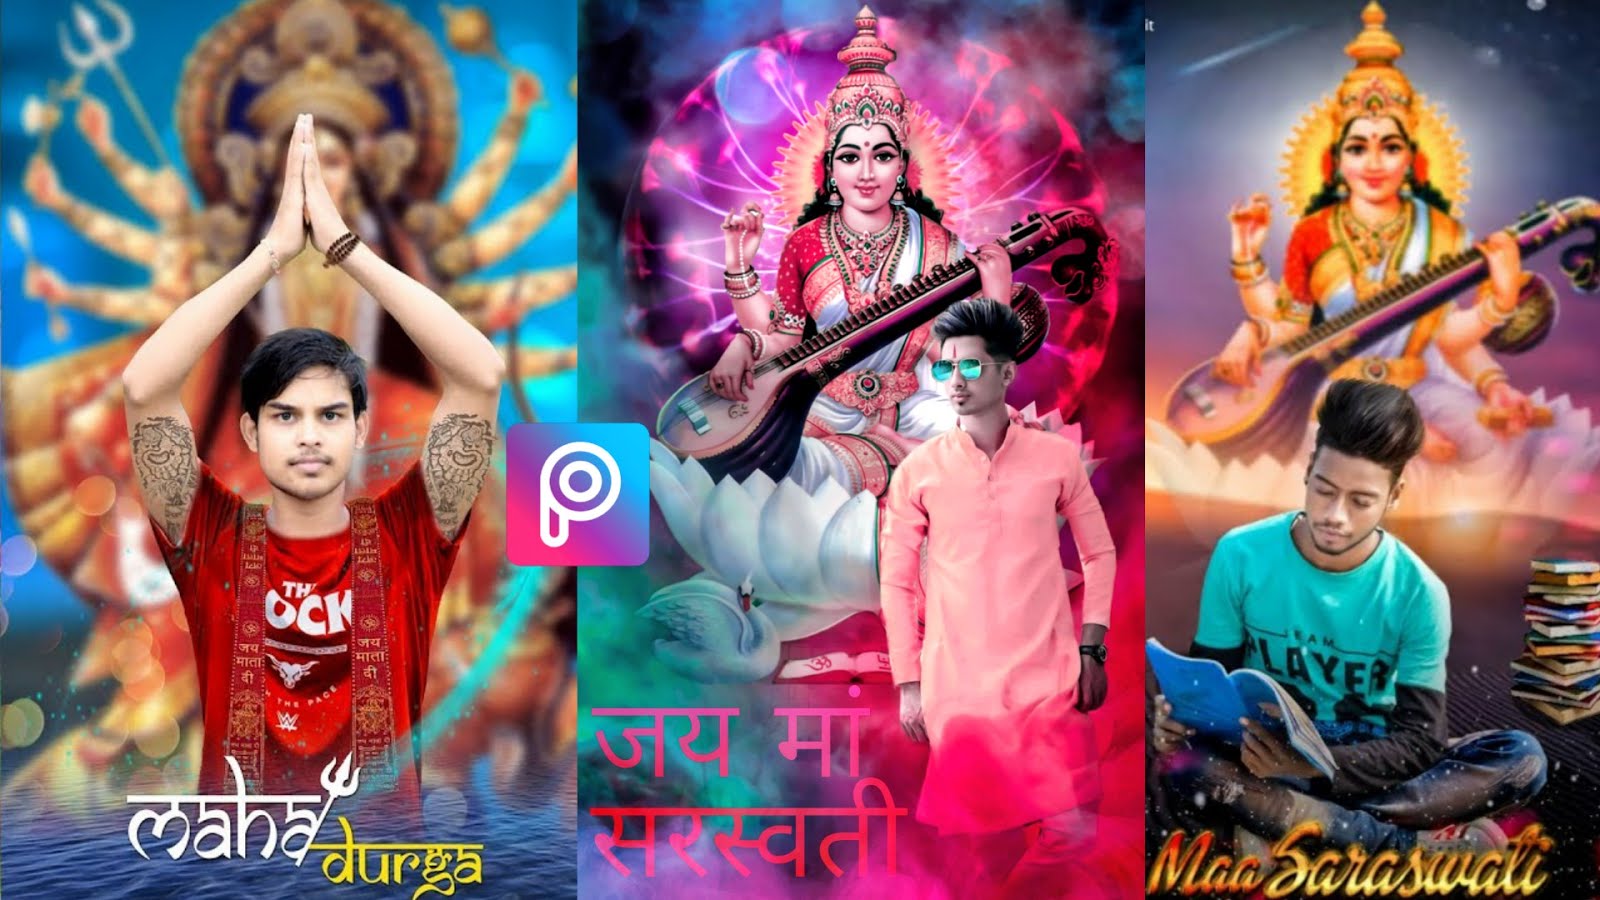 Saraswati puja photo editing picsart 2020, Saraswati puja photo editing  imags download - LEARNINGWITHSR